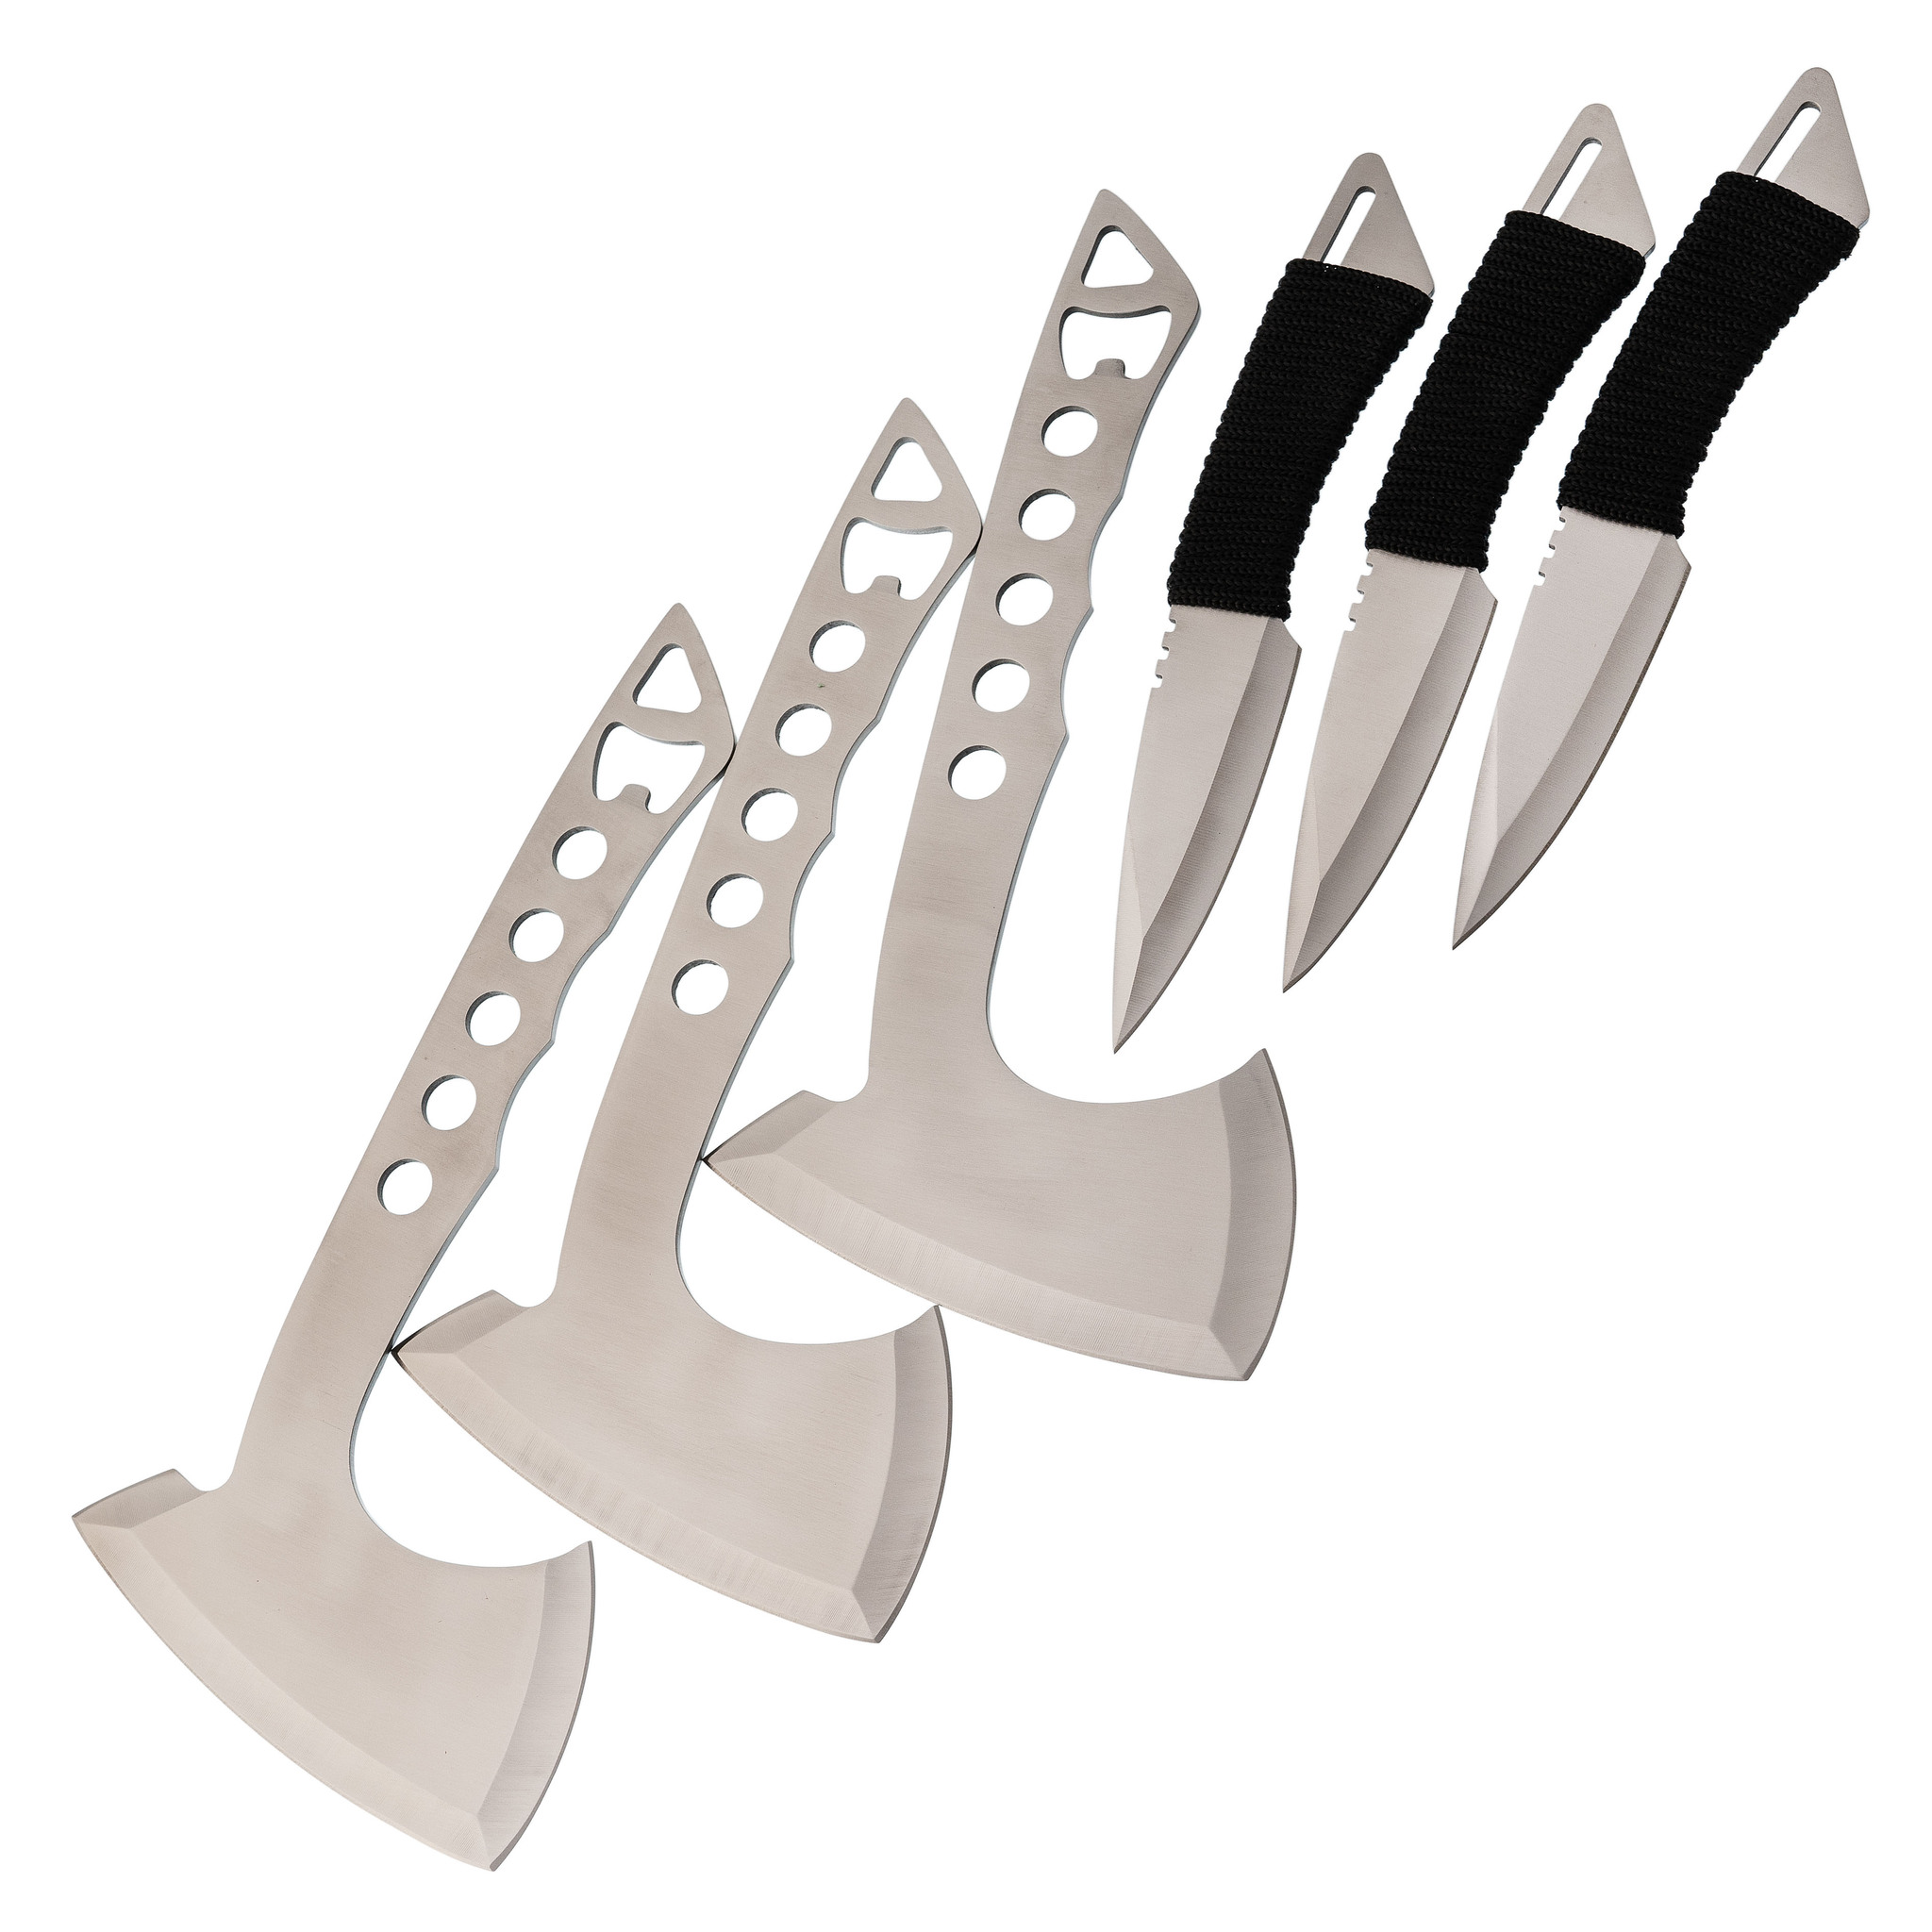 Набор спортивных топоров и ножей Баланс набор из 3 спортивных ножей кунай